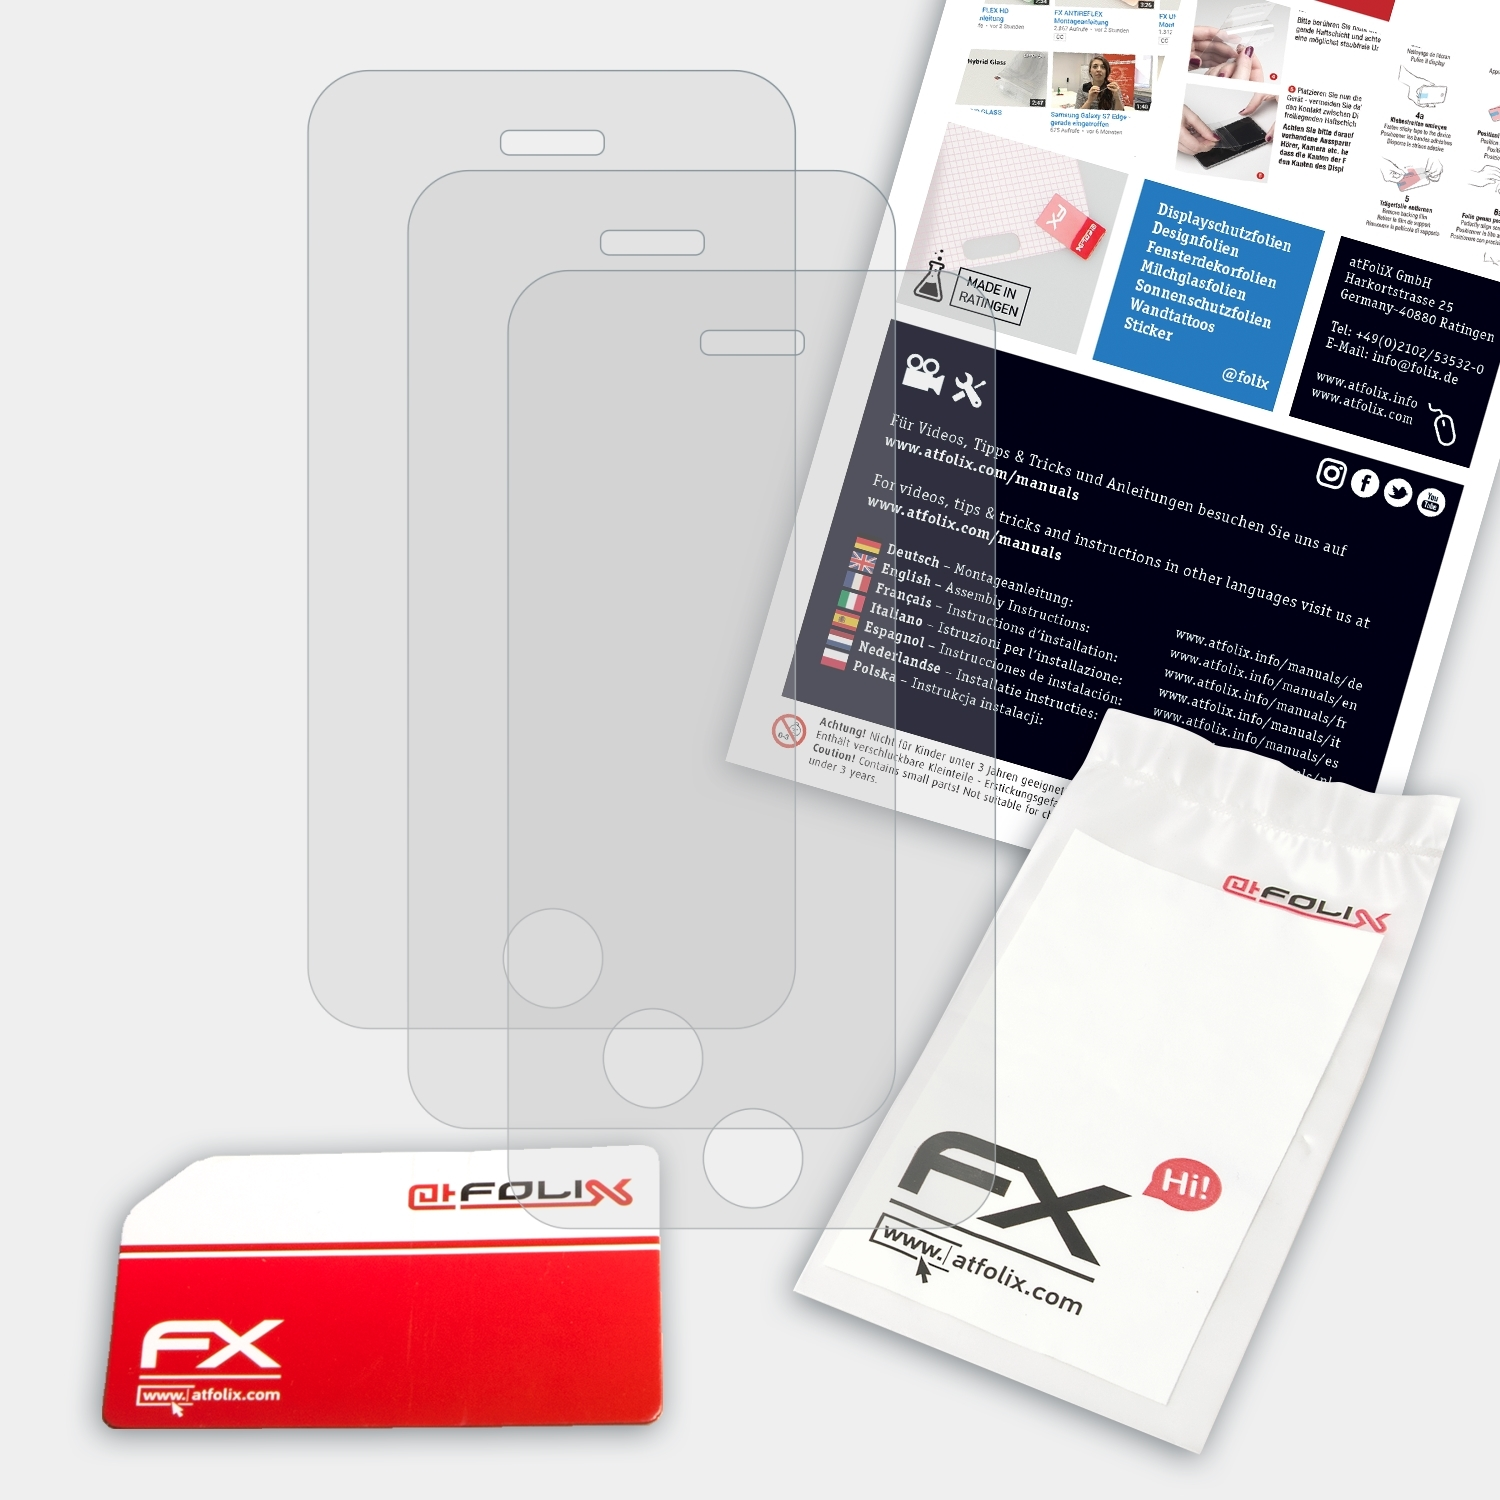 ATFOLIX Apple Displayschutz(für 3x FX-Antireflex iPhone 3Gs)